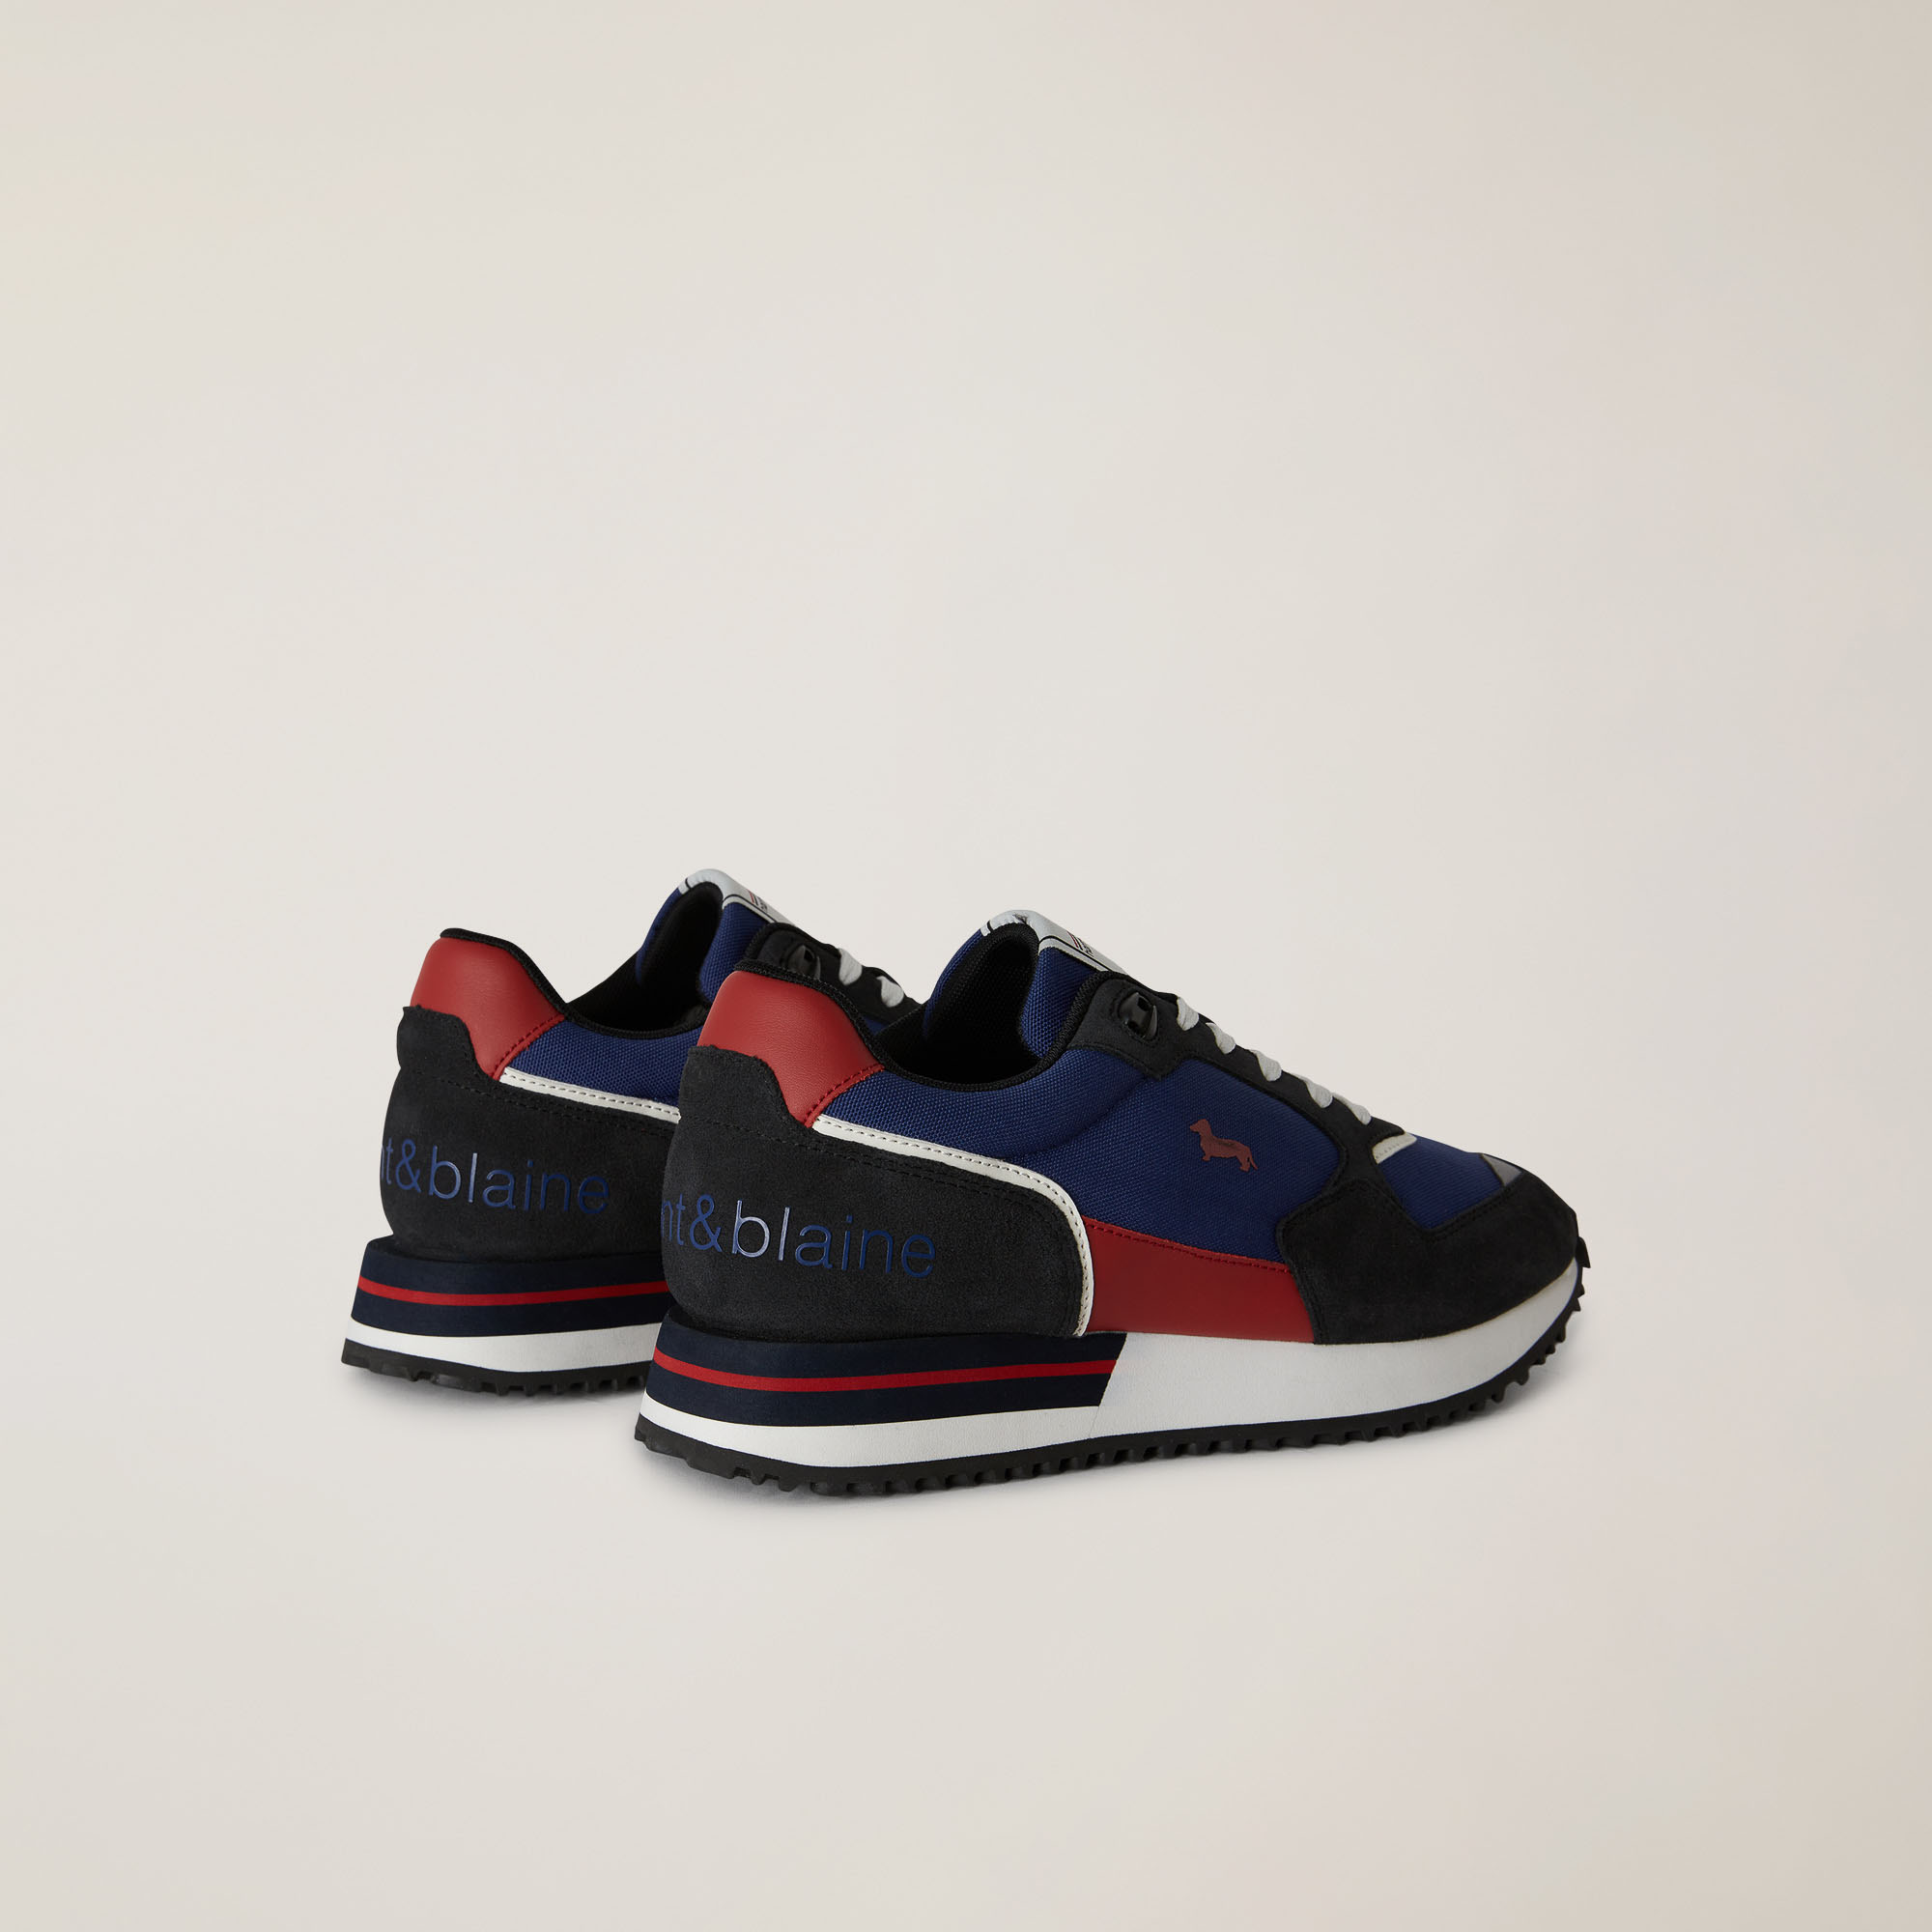 Sneaker Con Inserti A Contrasto, Blu/Rosso, large